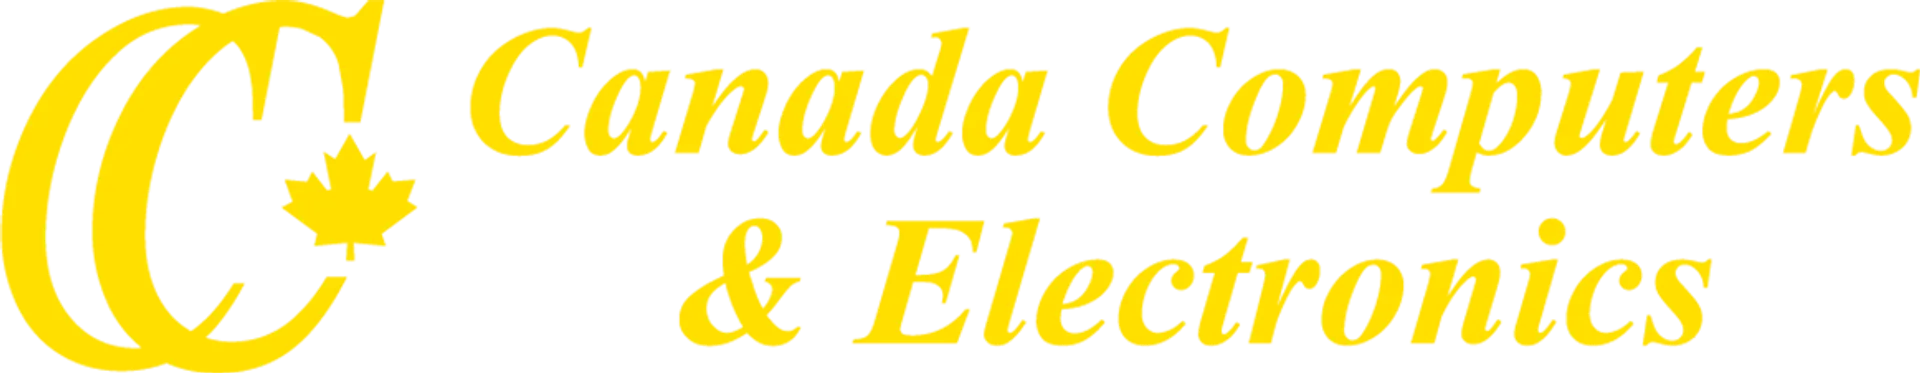 CANADA COMPUTERS logo de circulaire